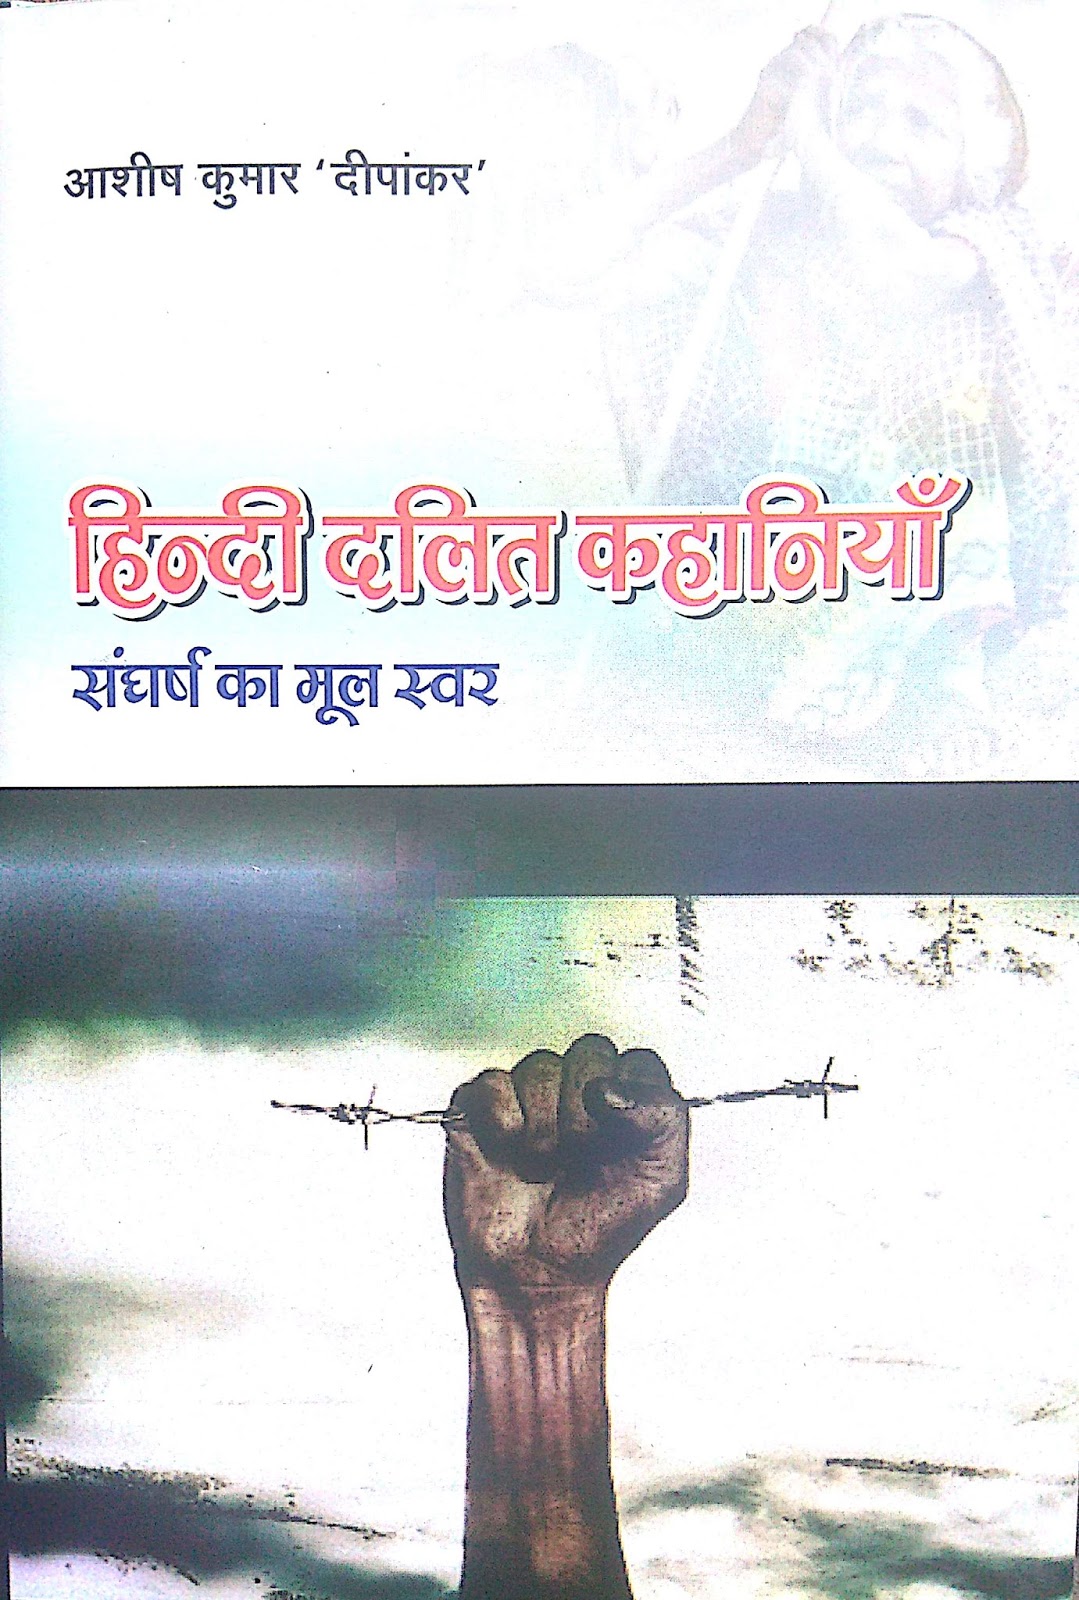 हिंदी दलित कहानियाँ: संघर्ष का मूल स्वर- आशीष कुमार 'दीपांकर'